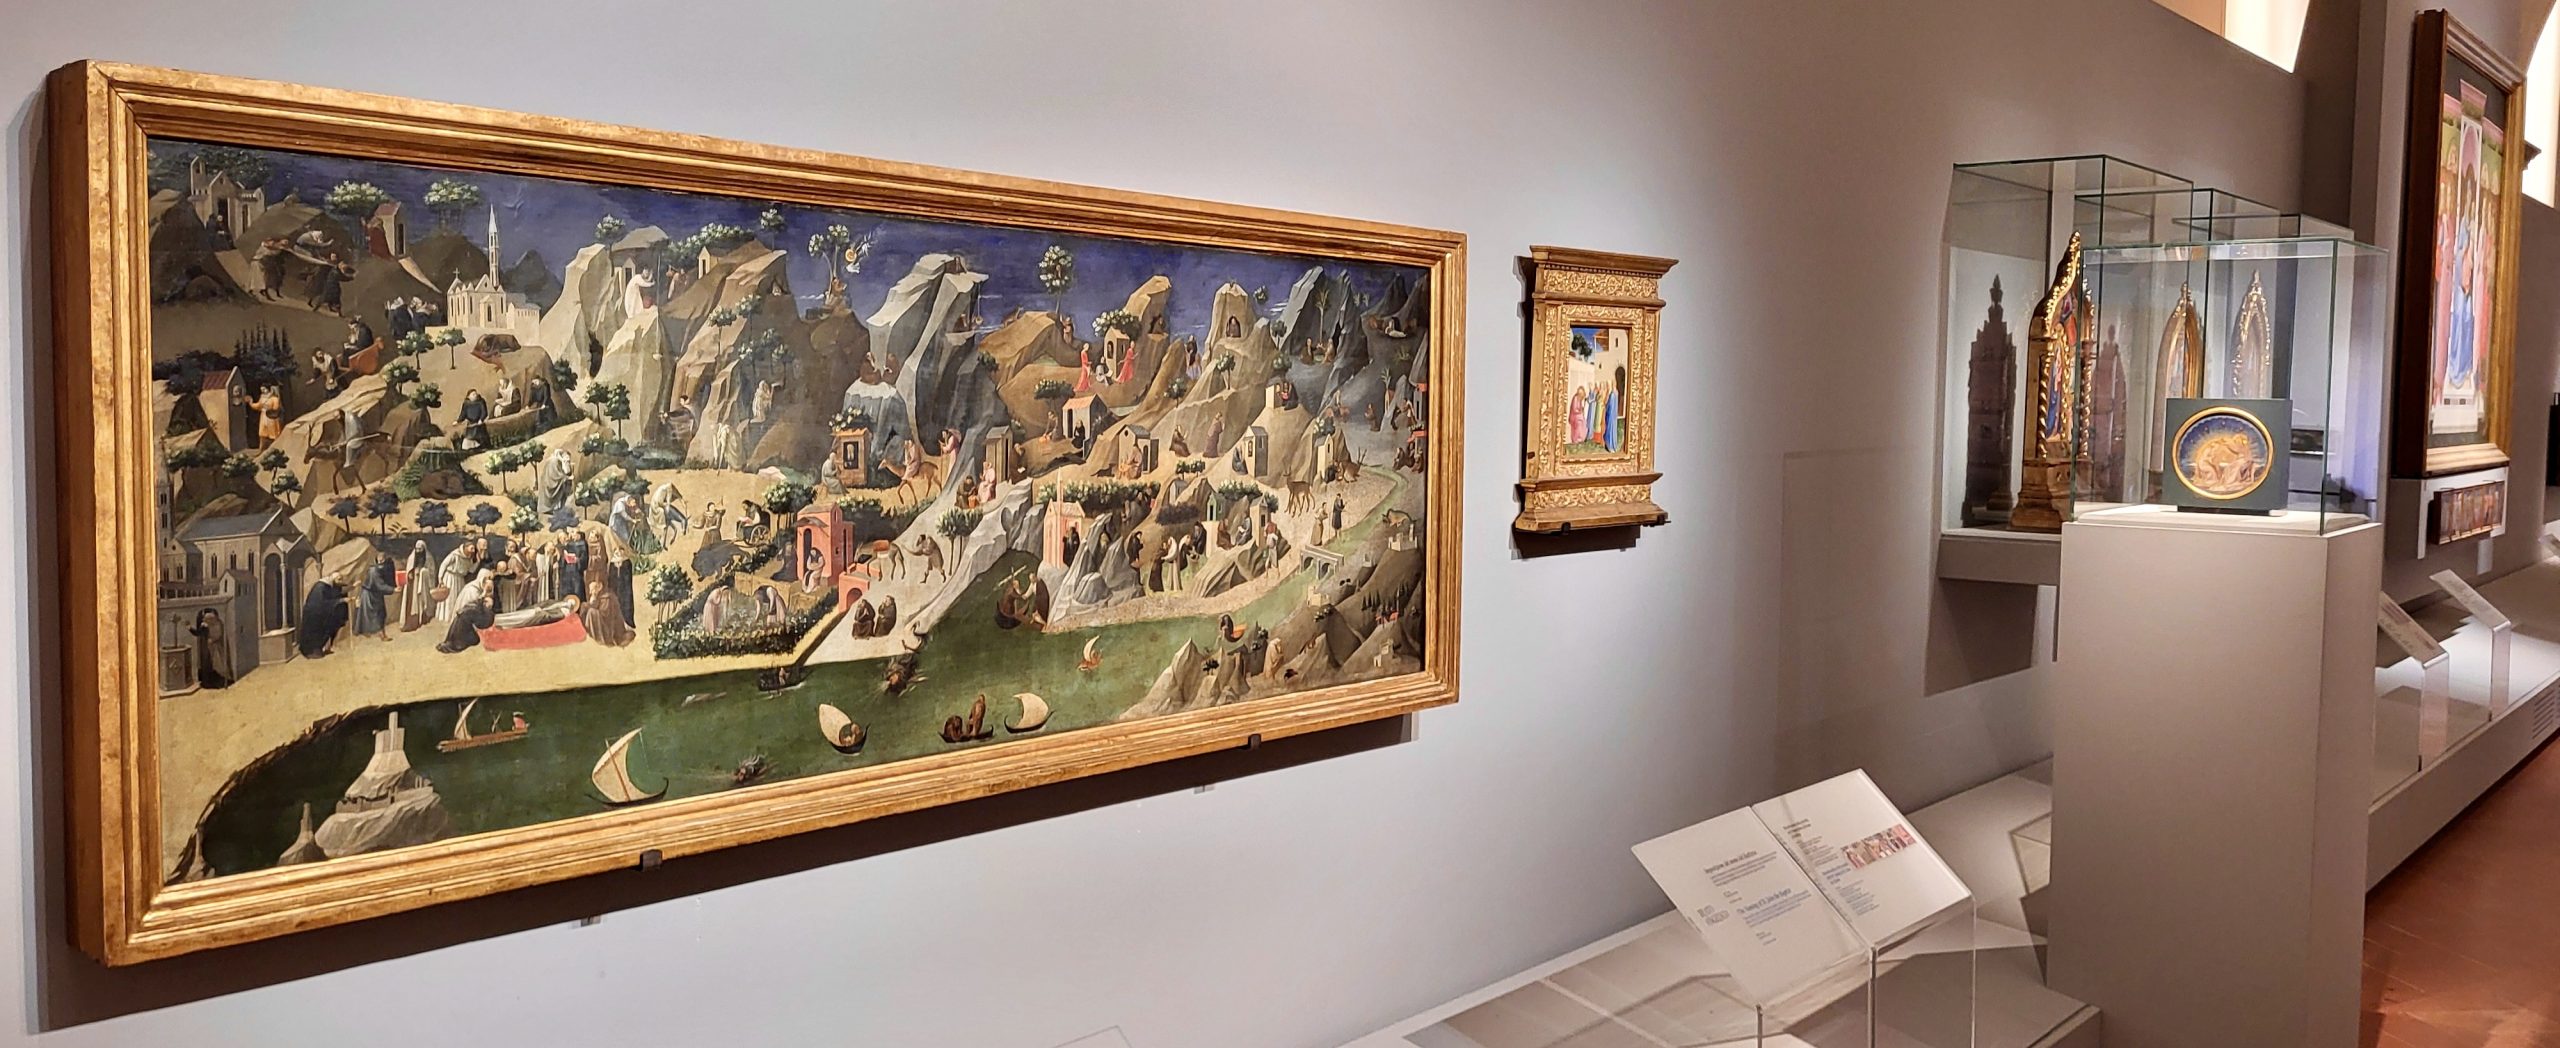 Scambio di opere del Beato Angelico tra il Museo di San Marco e gli Uffizi.          Esposta da oggi a San Marco la Tebaide nella Sala del Beato Angelico e agli Uffizi l’Incoronazione della Vergine riunita alla sua predella.